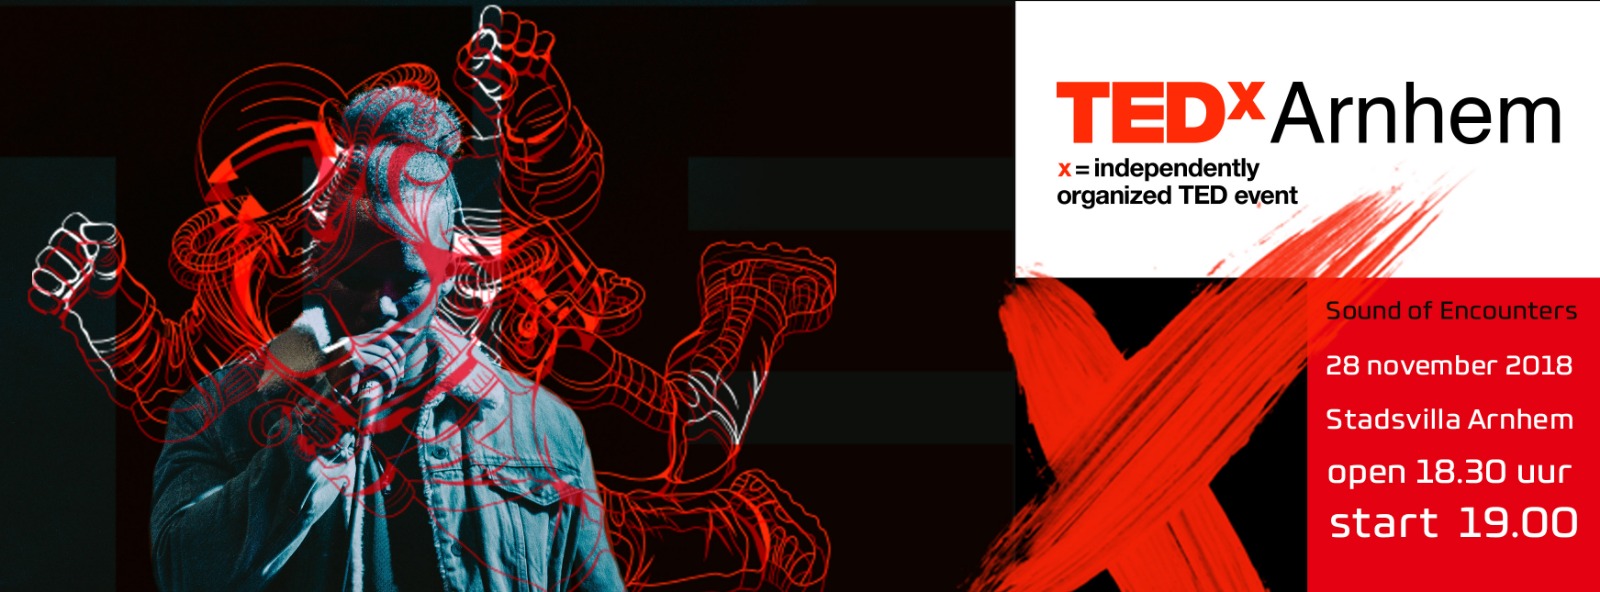 TEDxArnhem